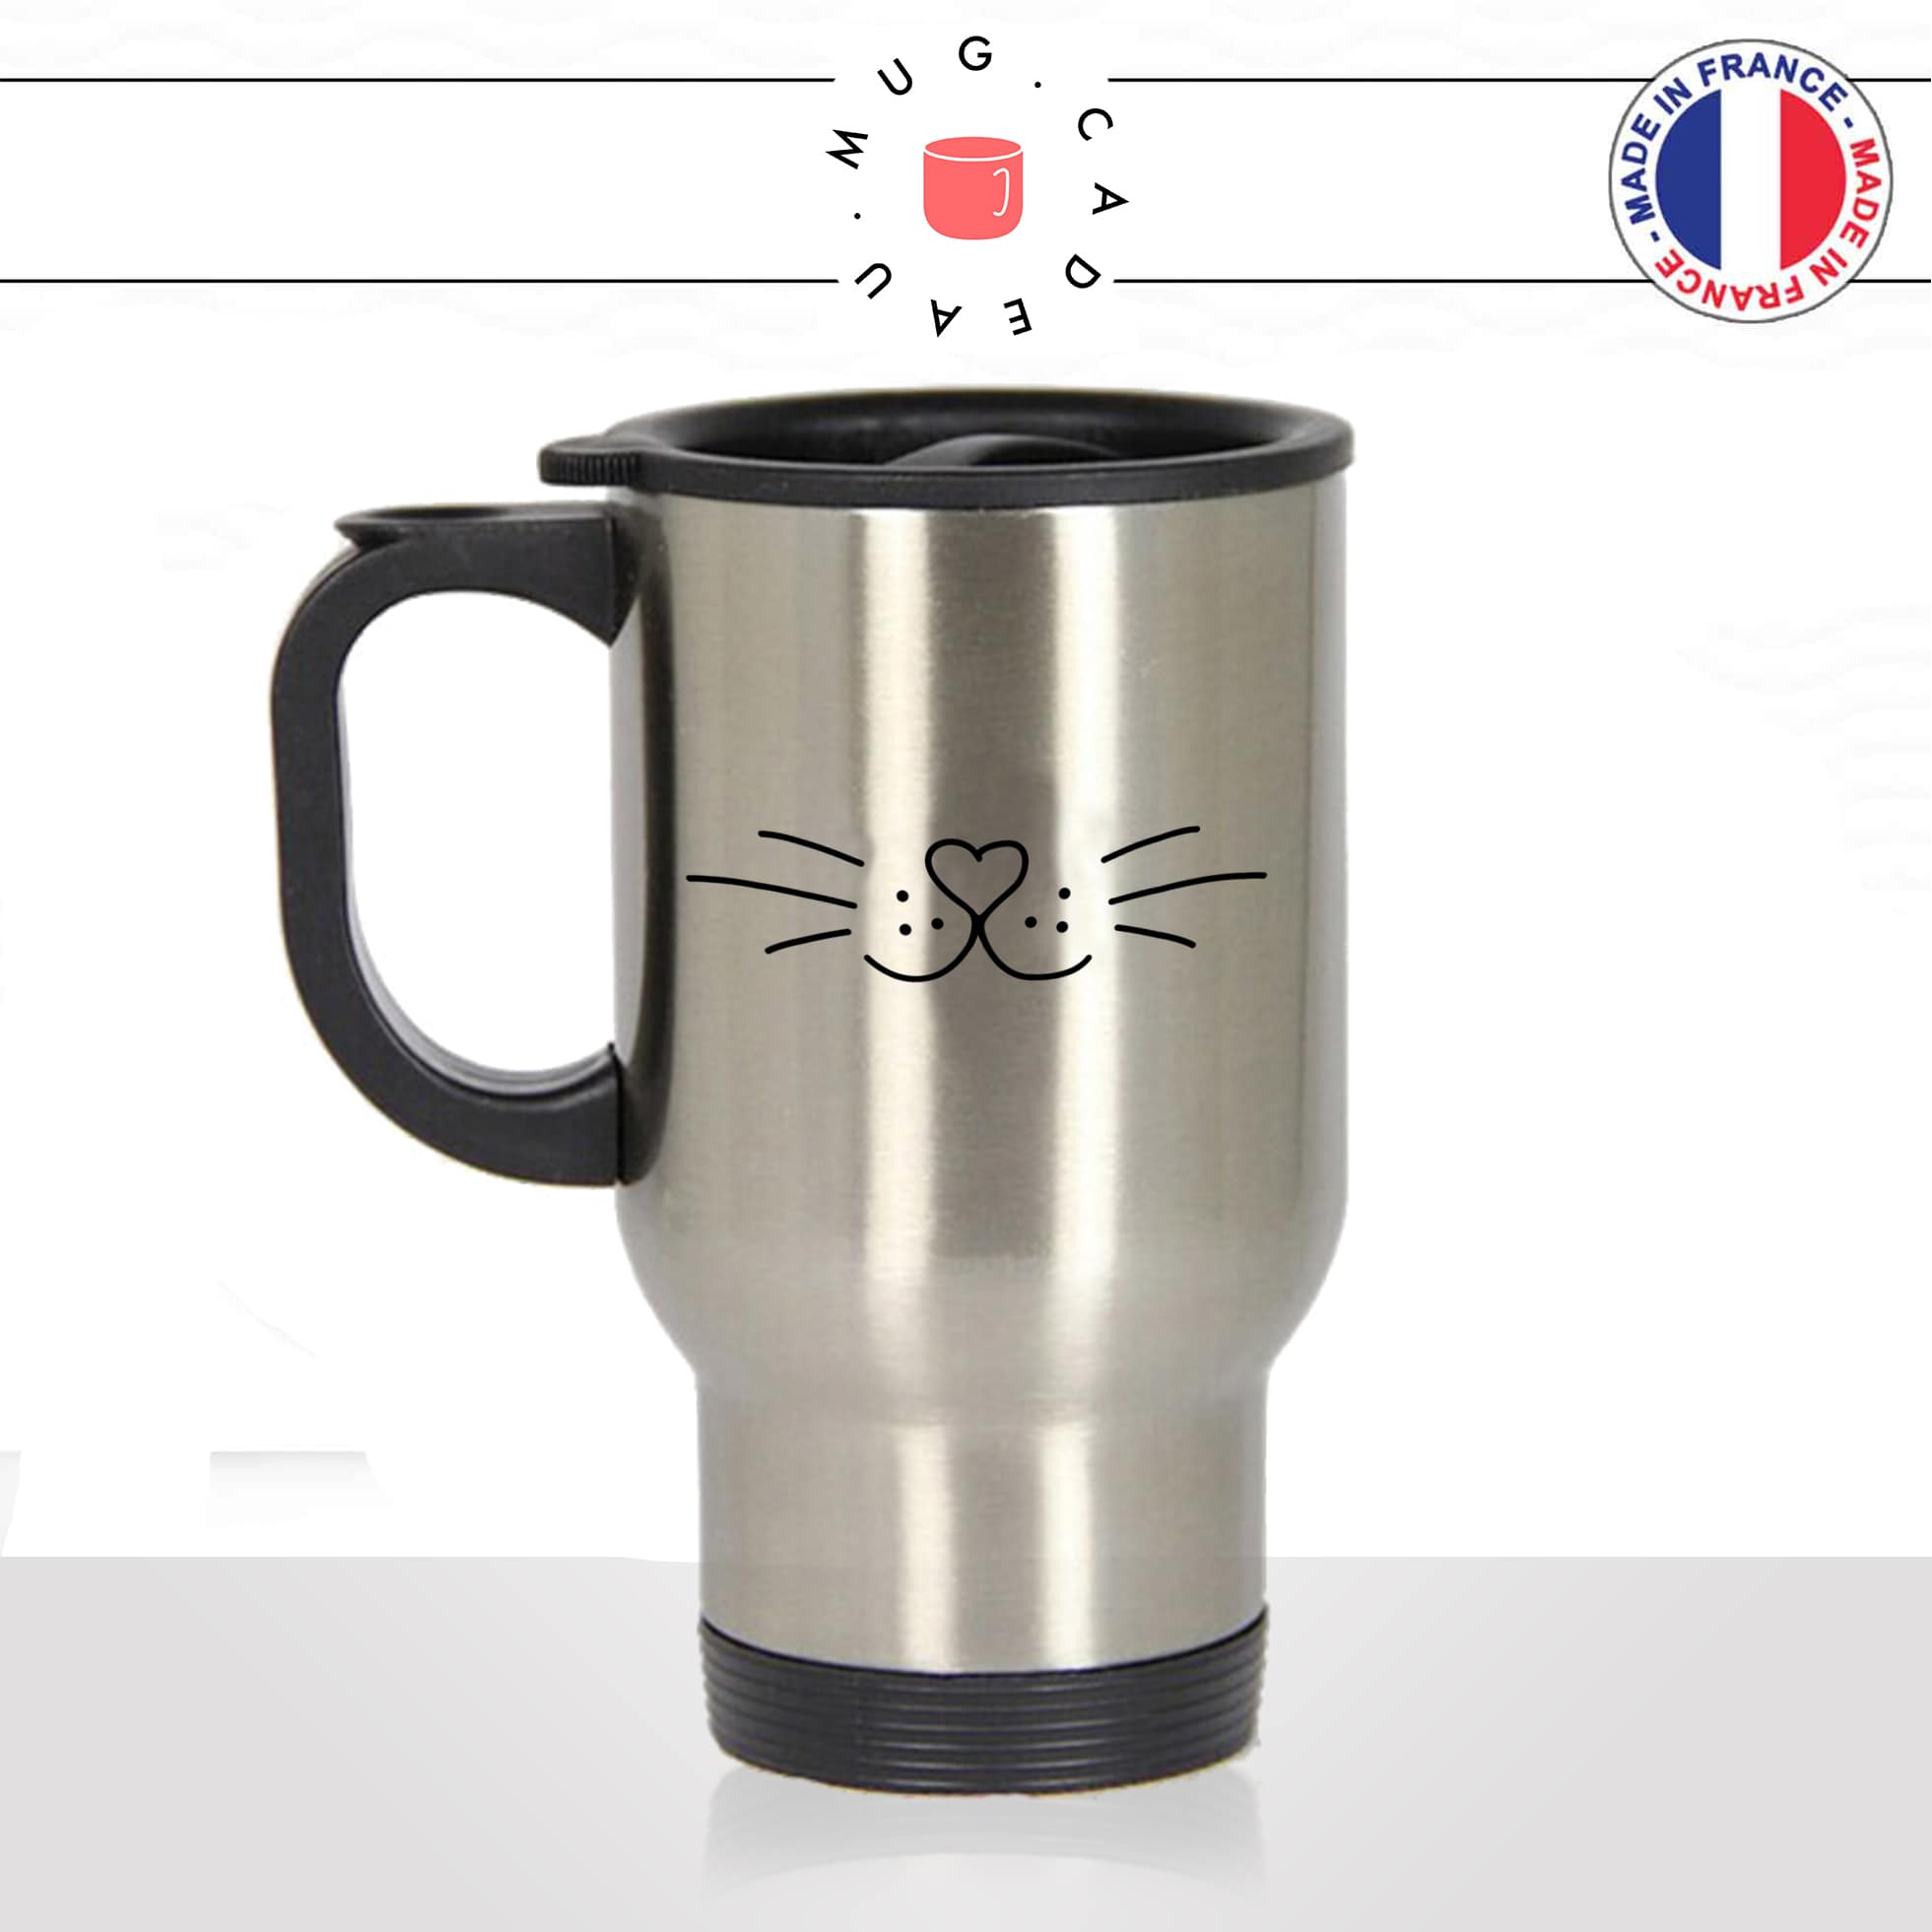 mug-tasse-thermos-de-voyage-café-thé-boisson-animal-animaux-chat-chaton-moustache-coeur-museau-mignon-idée-cadeau-original-fun-cool-min